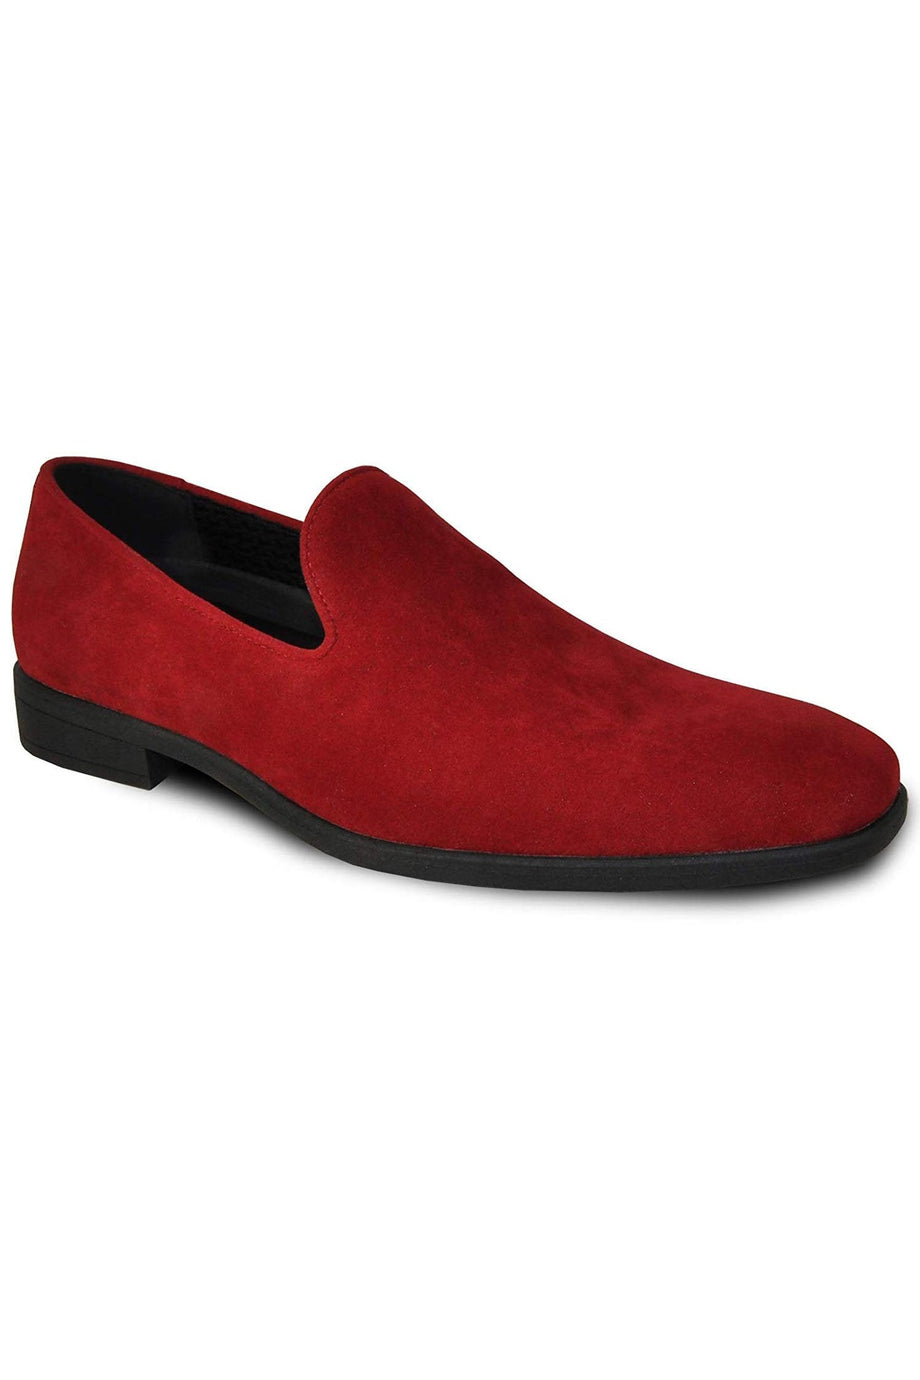 Vangelo "Chelsea" Red Suede Tuxedo Shoes